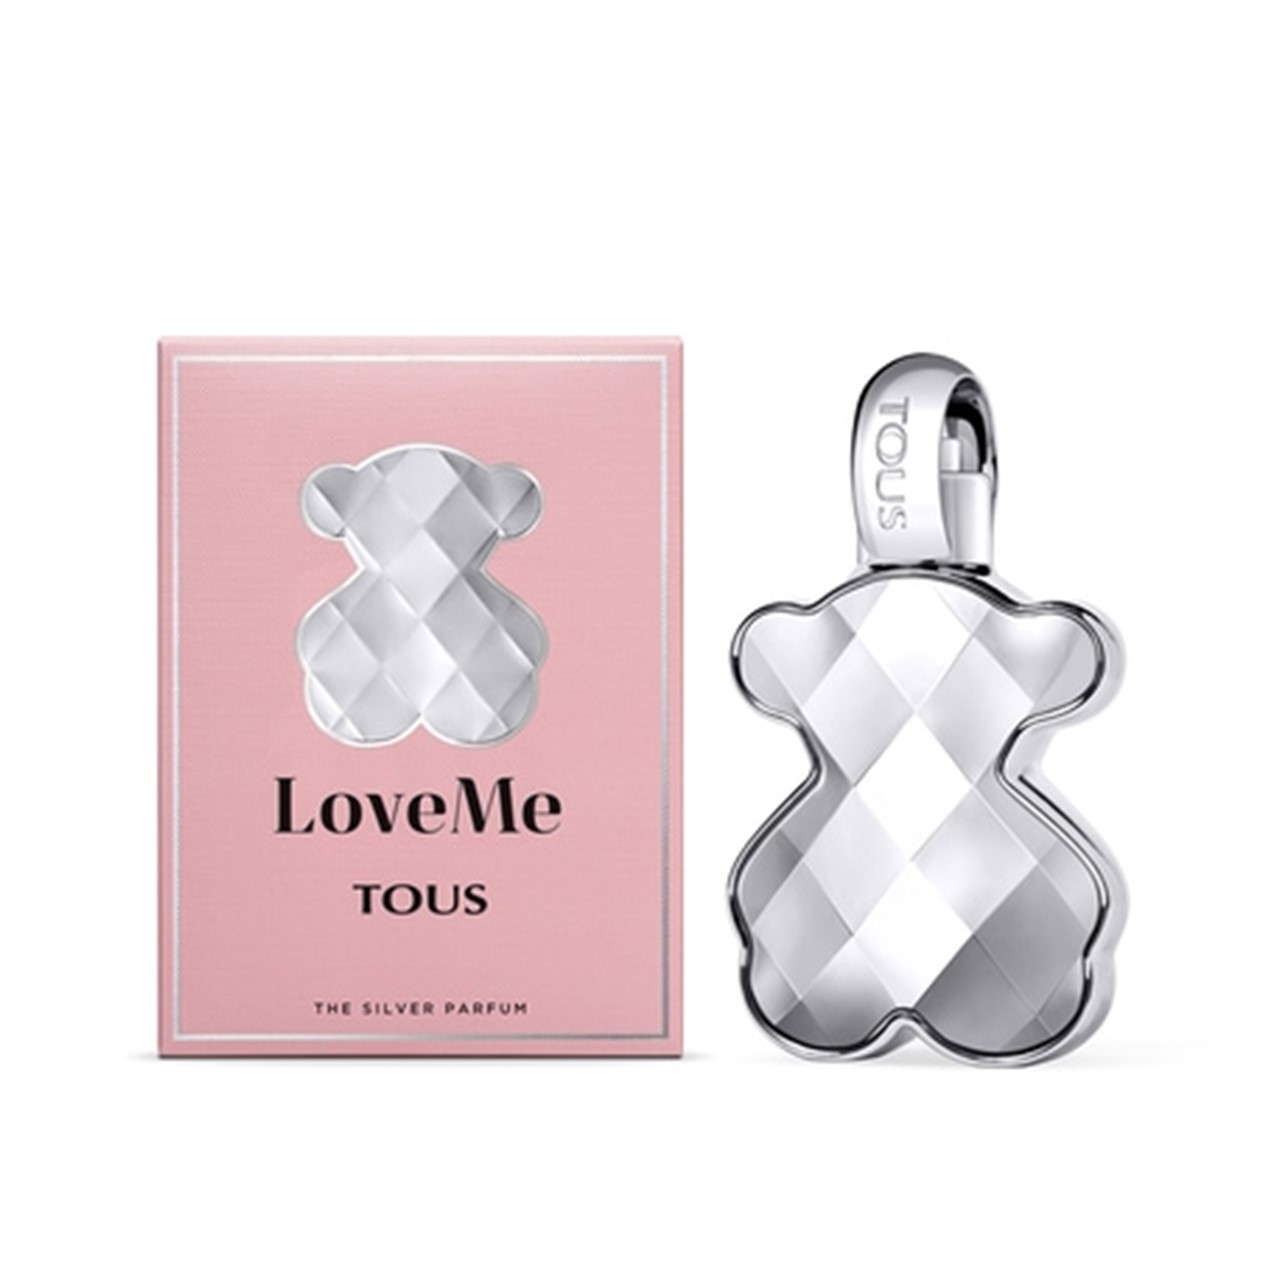 Buy Tous LoveMe The Silver Parfum 50ml (1.7 fl oz) · USA